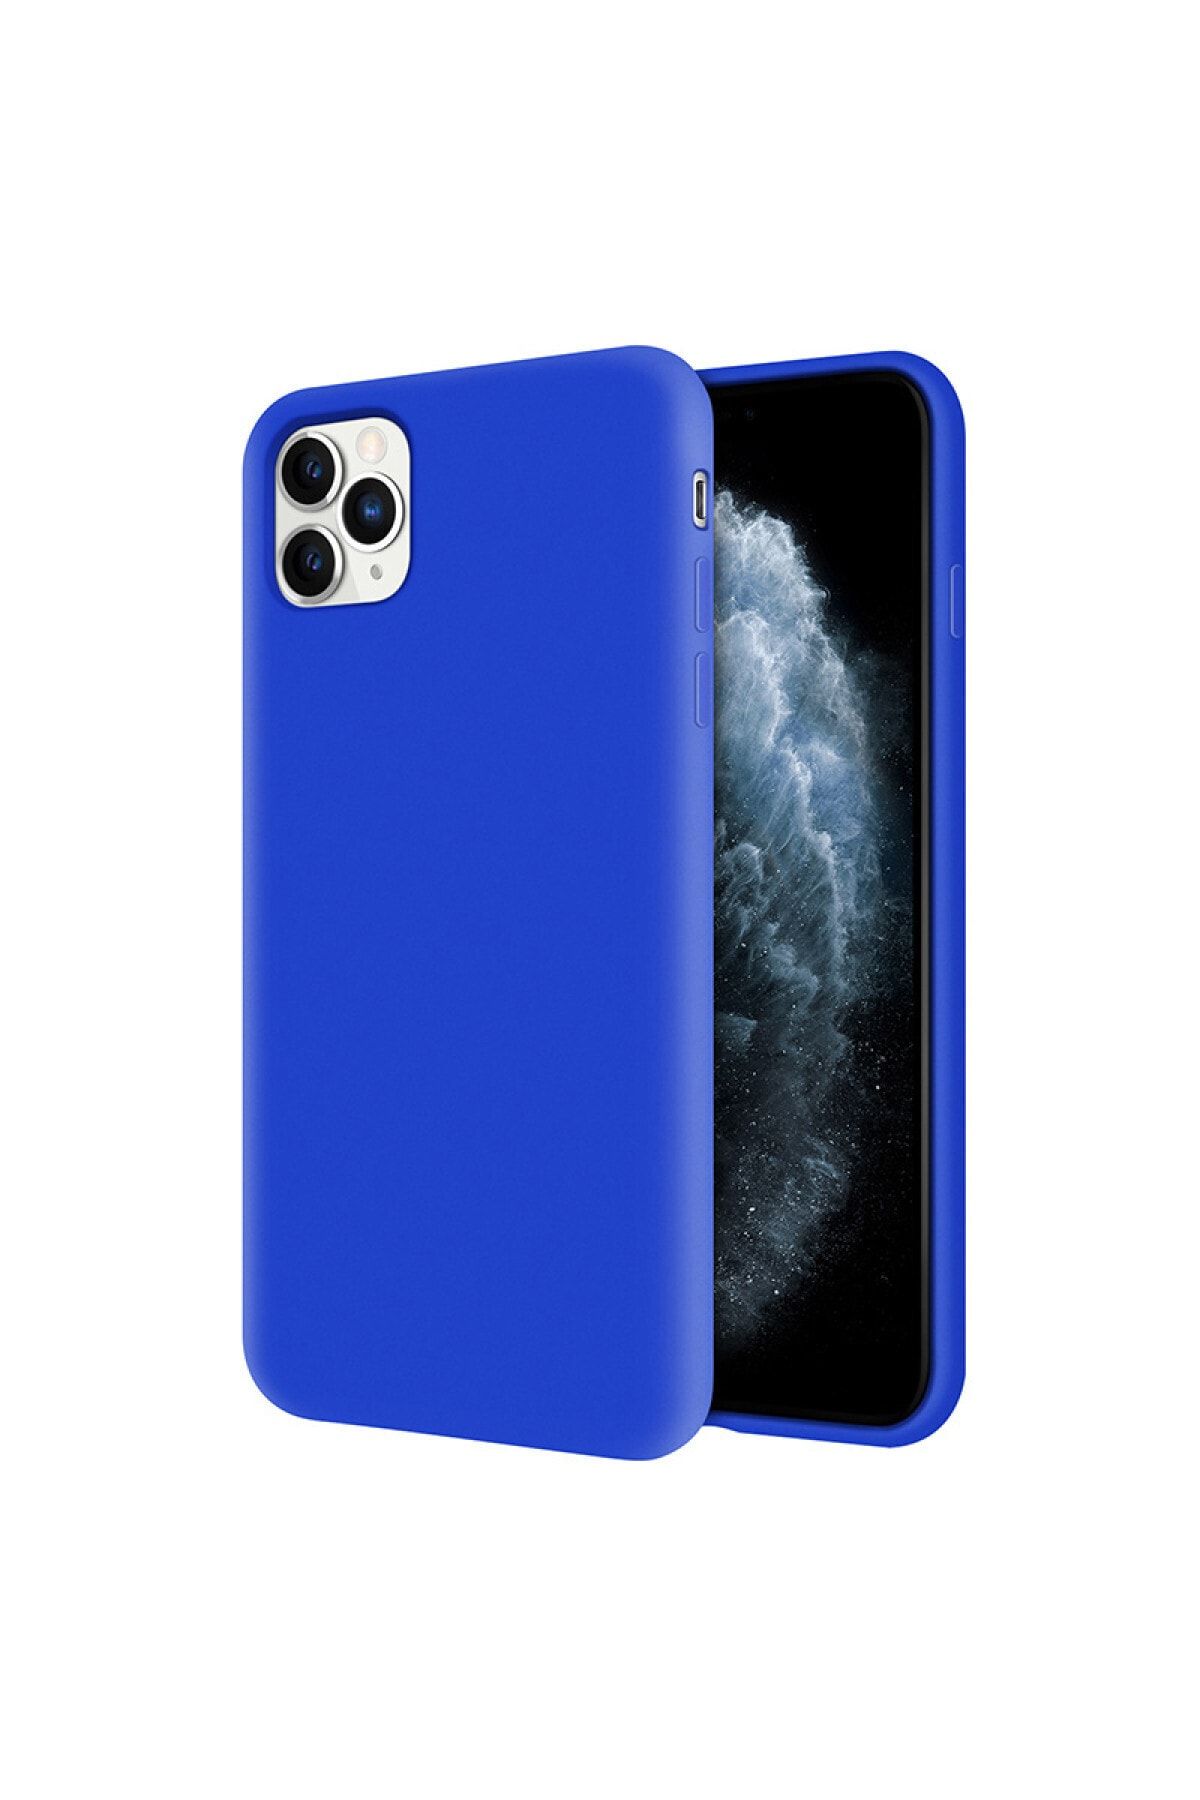 Kzy Mobilya Apple Iphone 11 Pro Içi Kadife Soft Logosuz Lansman Silikon Kılıf - Mavi